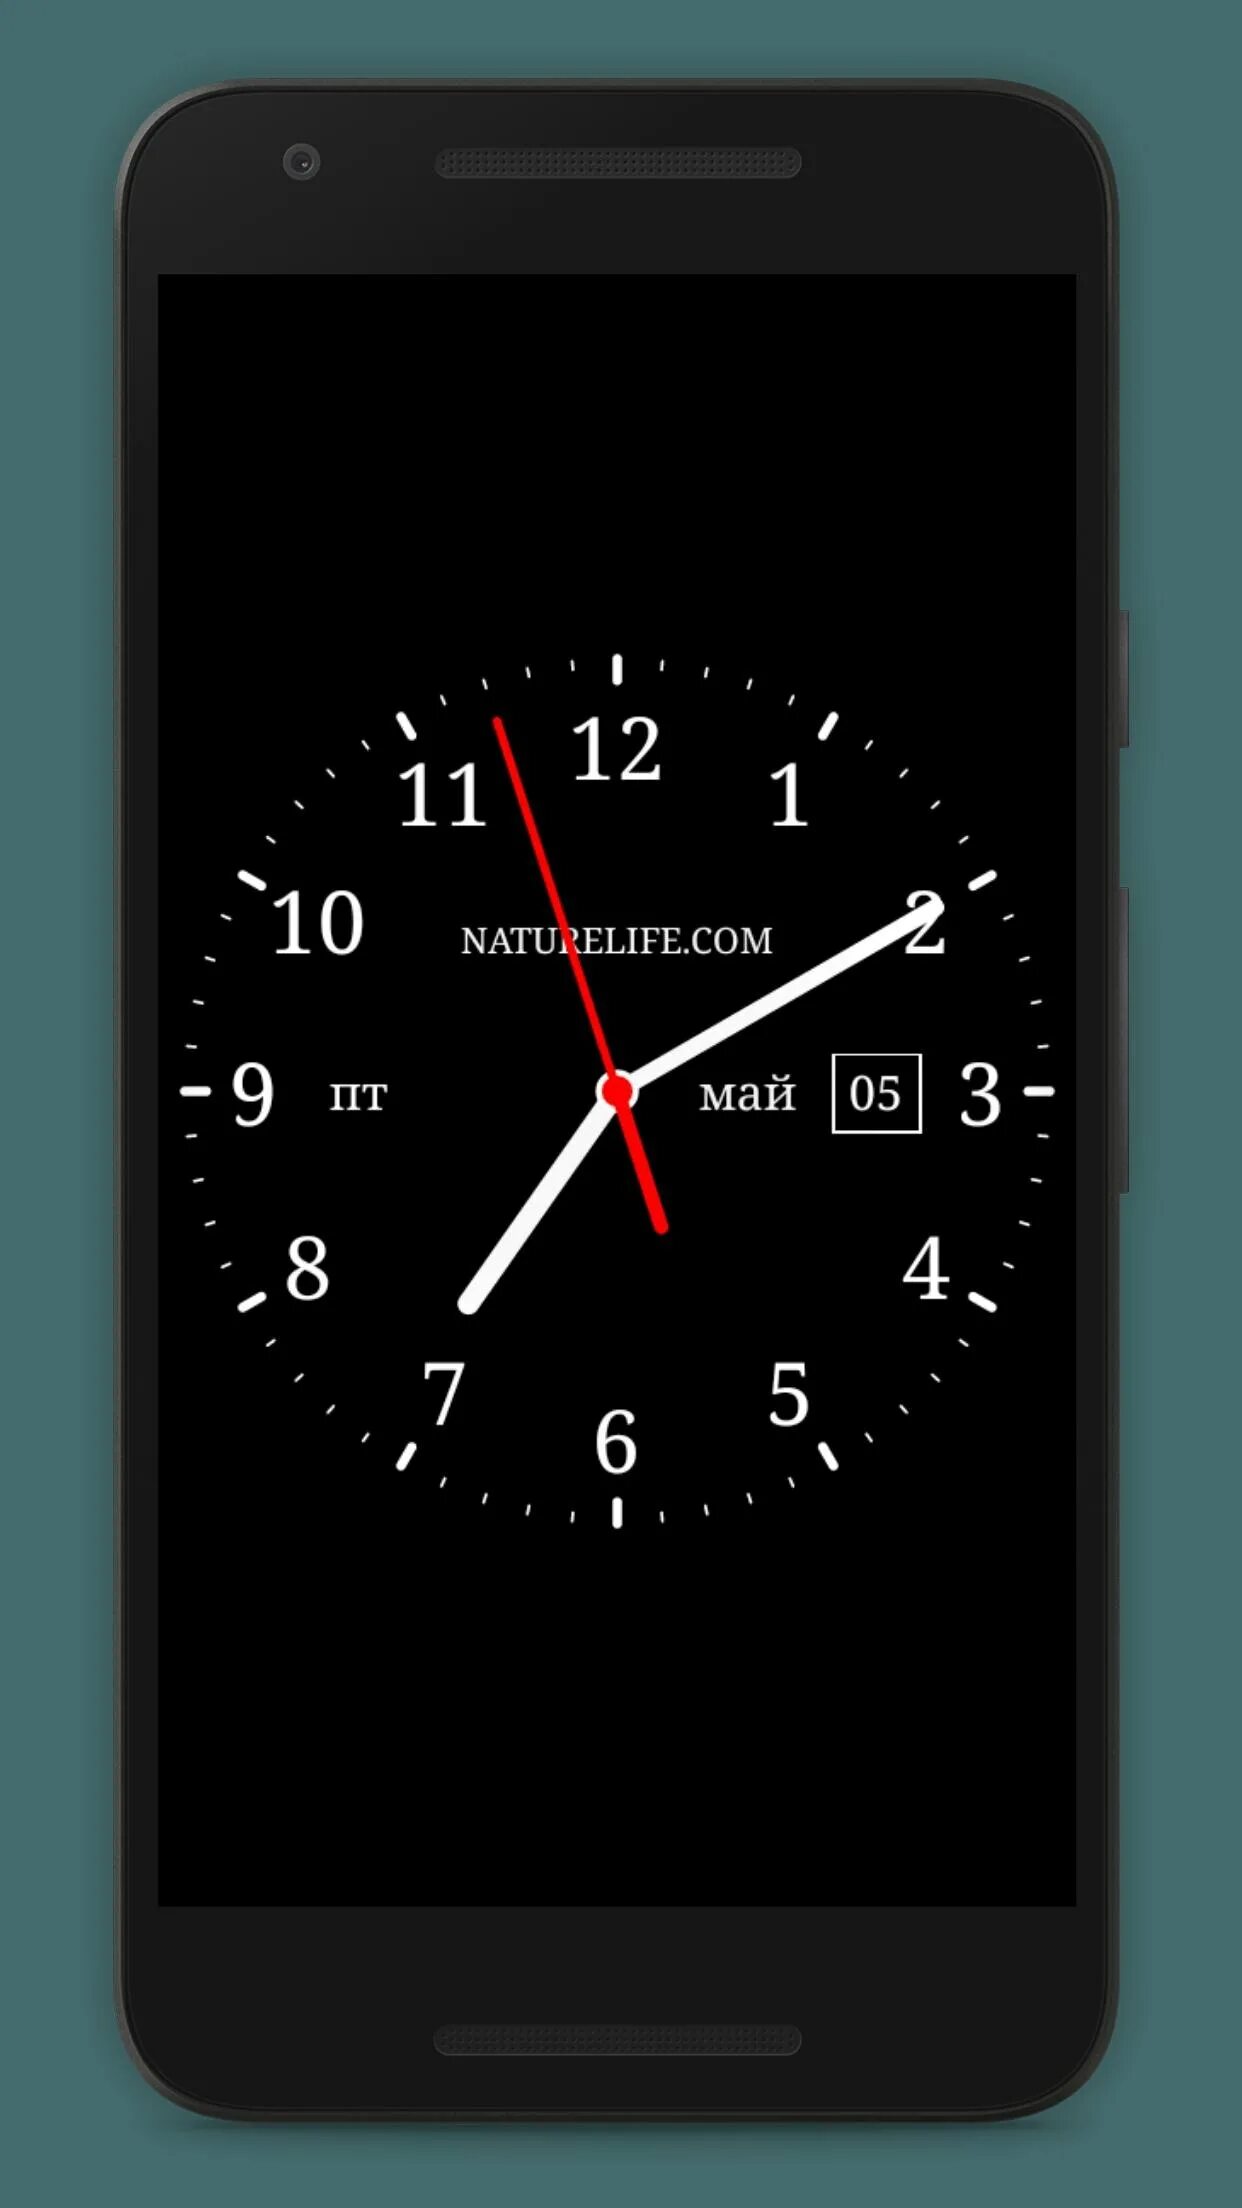 Аналоговые часы для андроид 4.2.2. Аналоговые часы для андроид Samsung a 260. Аналоговые часы для андроид. Часы на экран смартфона. Установить на телефон часы крупно